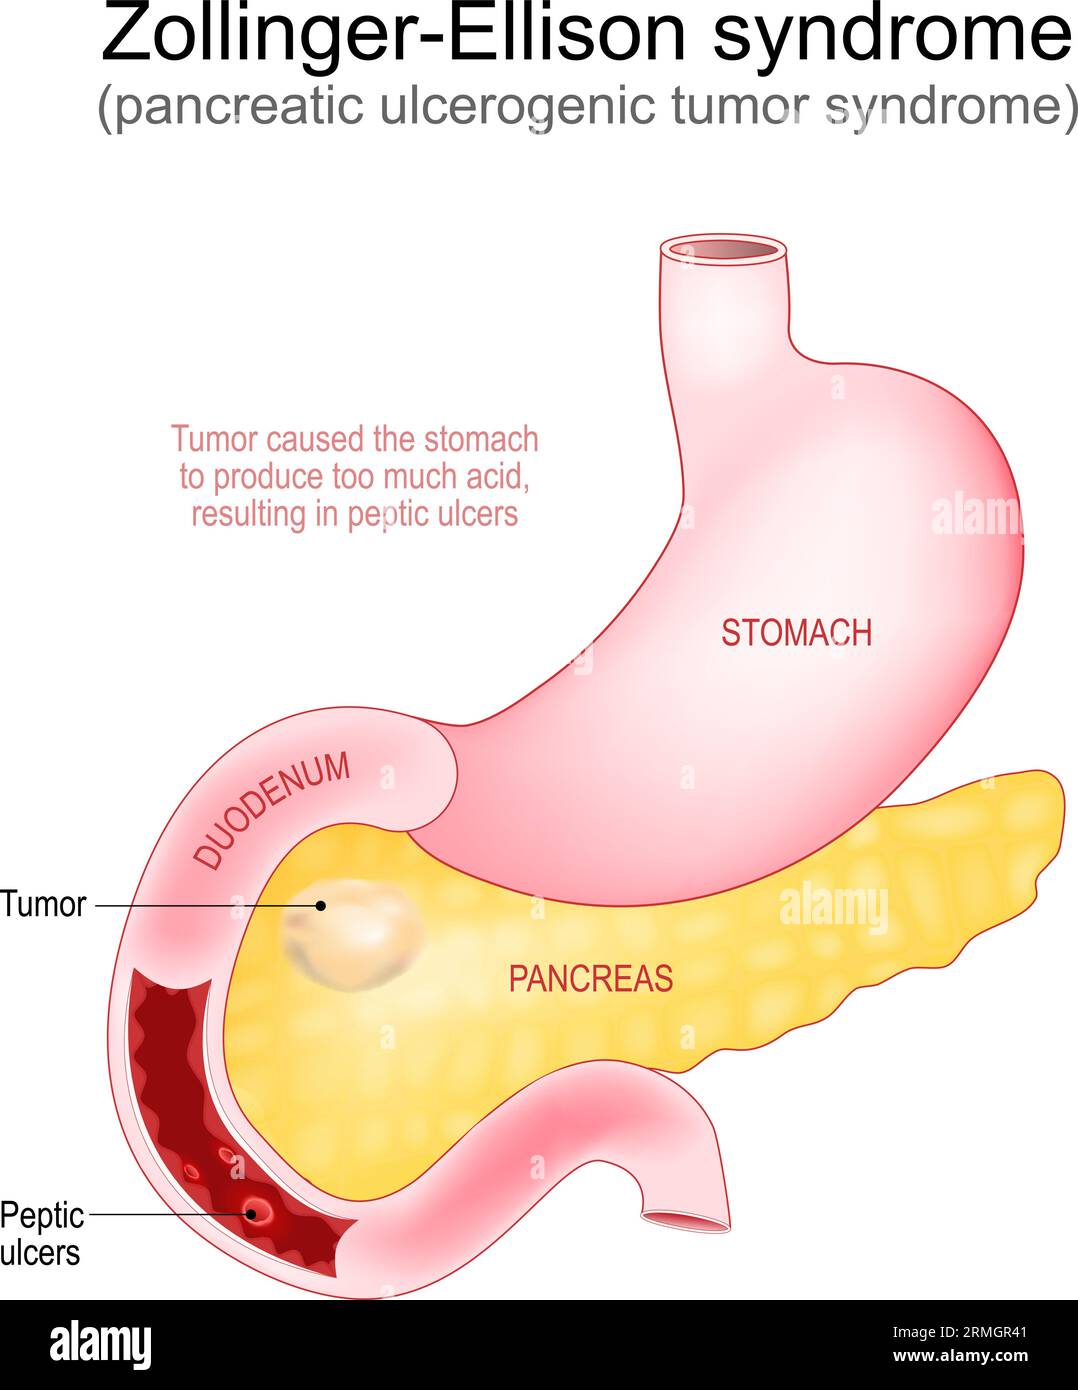 Syndrome de Zollinger-Ellison. Le gastrinome est une tumeur développée dans le pancréas qui a causé des ulcères peptiques dans le duodénum. Partie du système digestif humain. Illustration de Vecteur